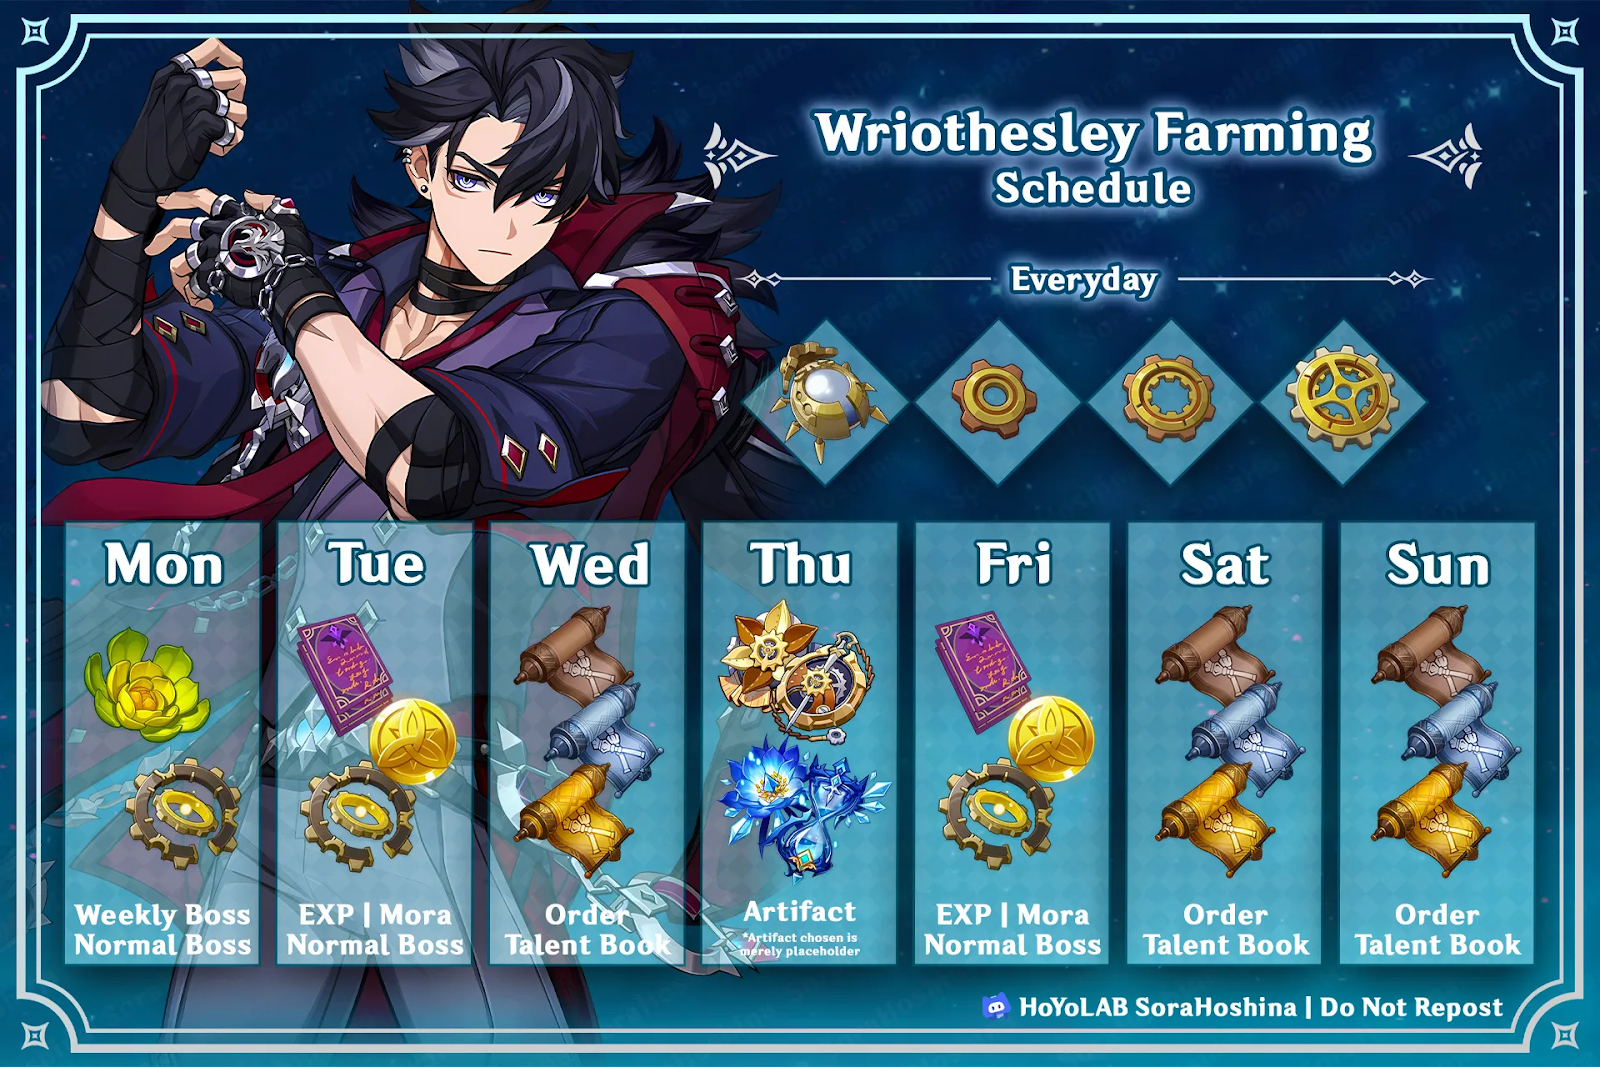 Wriothesley farming schedule